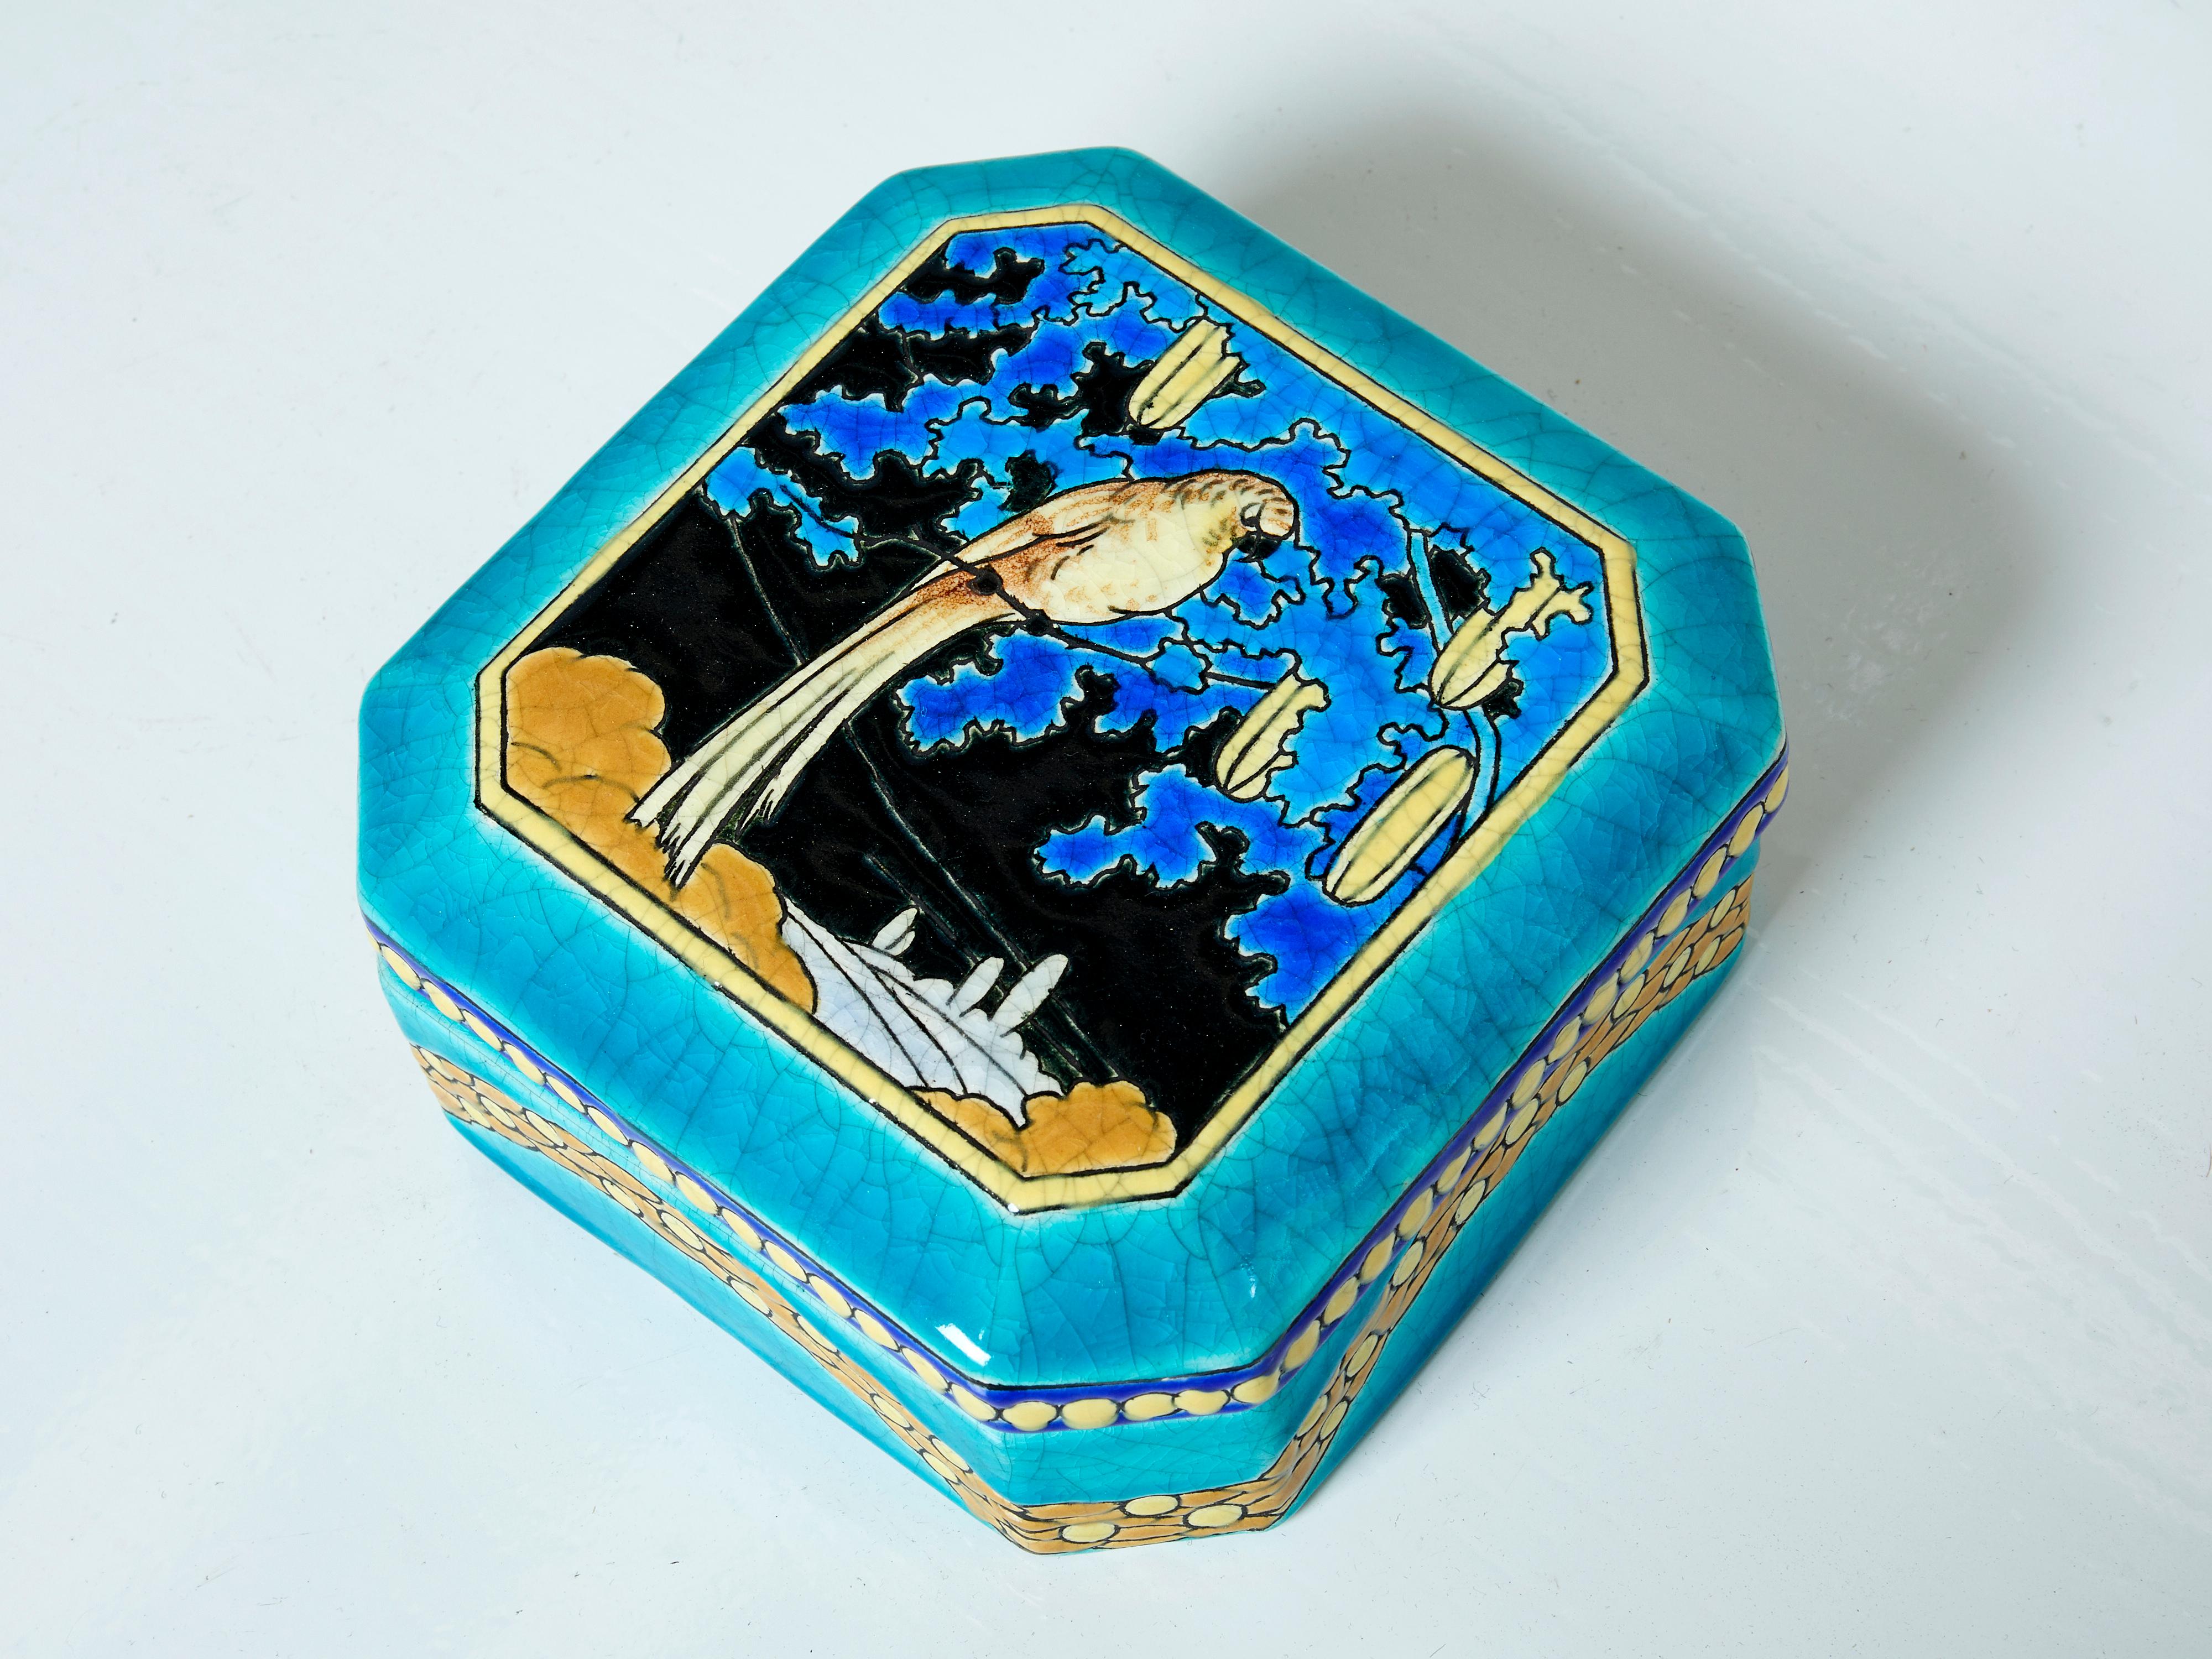 Rare grande boîte carrée en céramique Art déco des Faïenceries et Emaux de Longwy réalisée vers 1925. La Chinoiserie cloisonnée émaillée turquoise, lumineuse et audacieuse, représente un magnifique perroquet entouré de feuillage. Le fond bleu